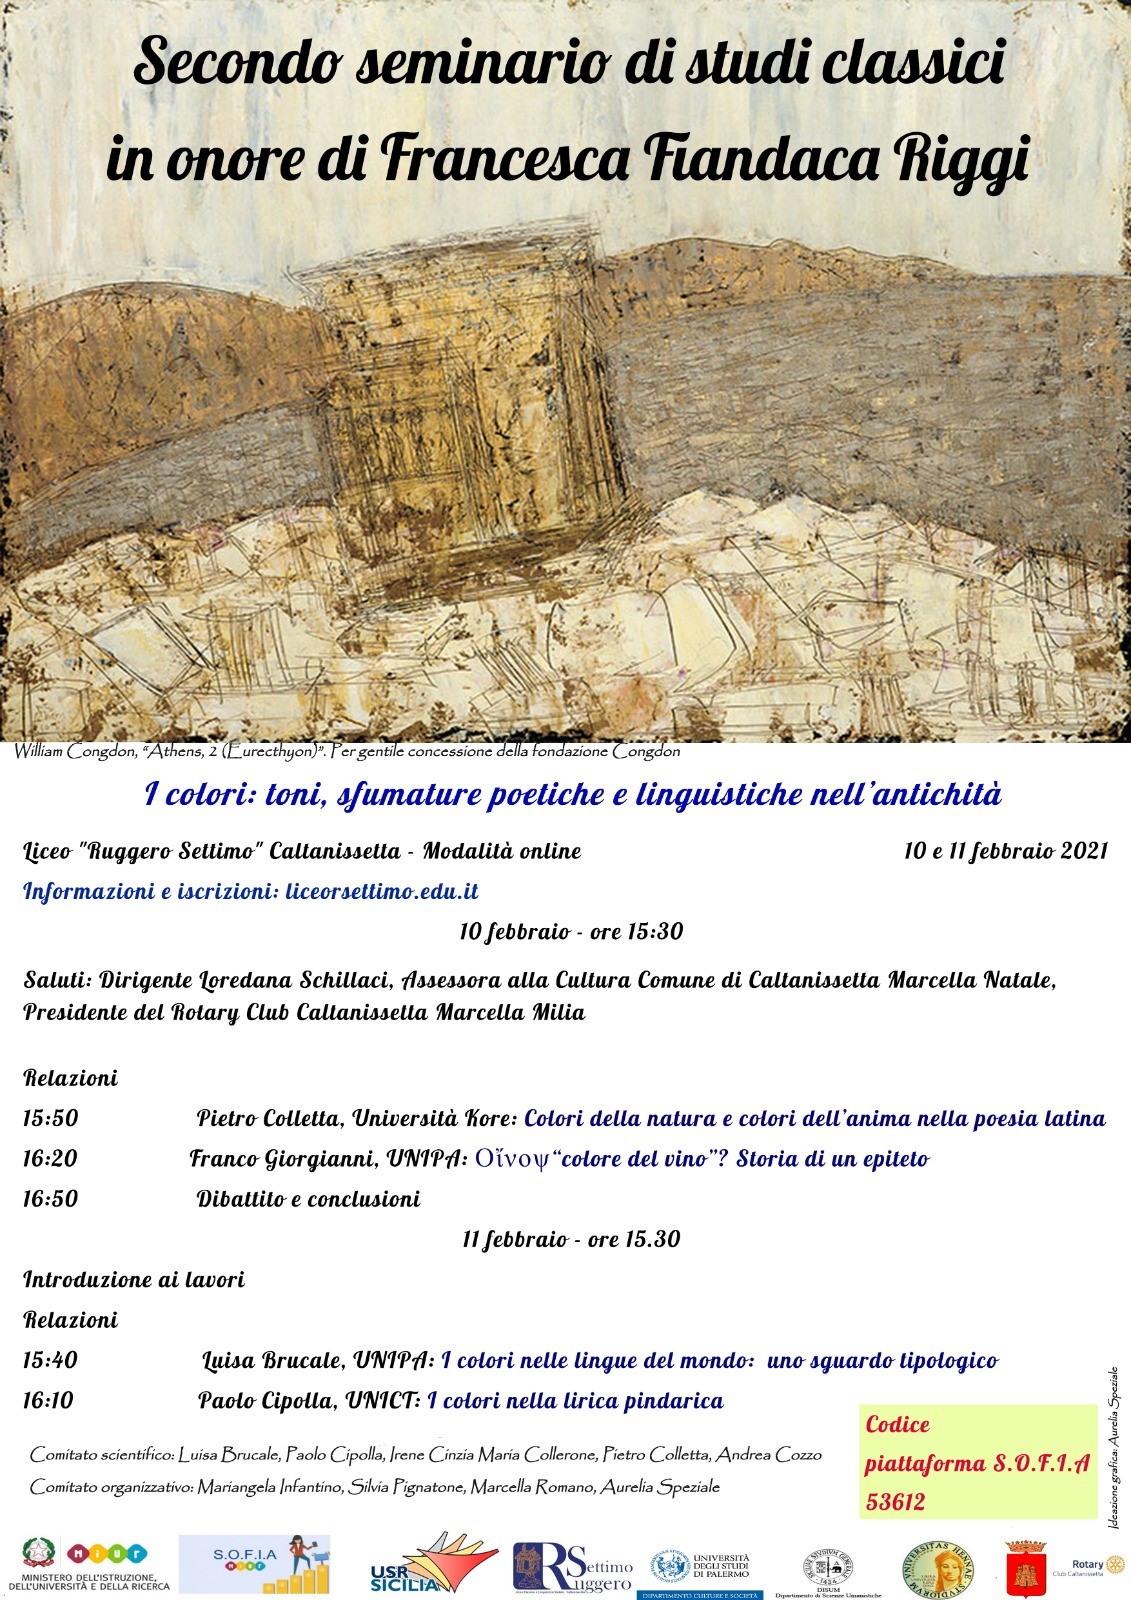 Locandina 2021 - Invito al Seminario di studi classici in onore di Francesca Fiandaca Riggi.jpg